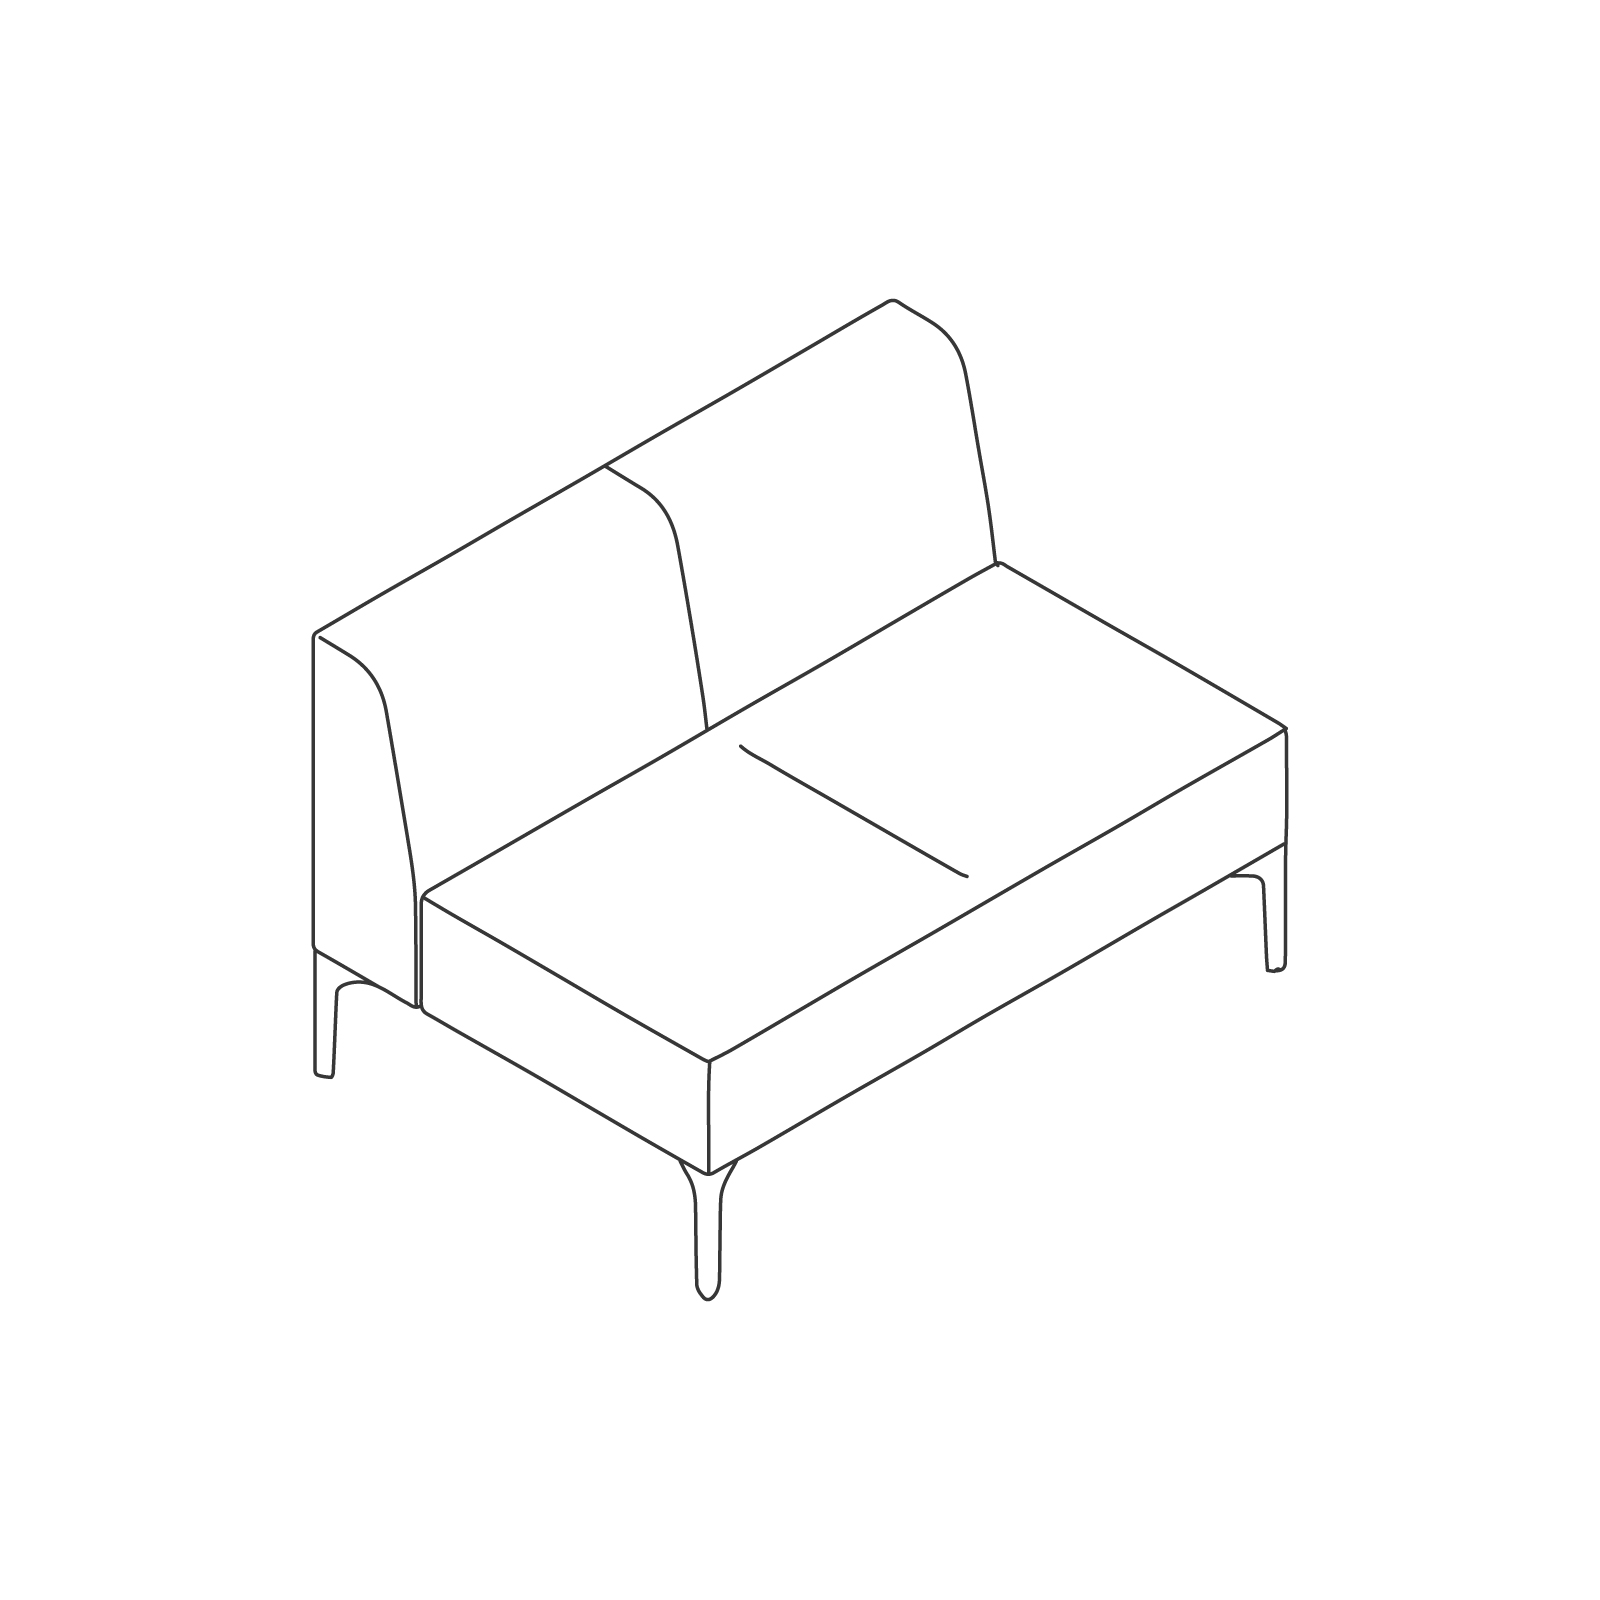 线描图 - Symbol模块化座椅 - 无扶手 - 双座